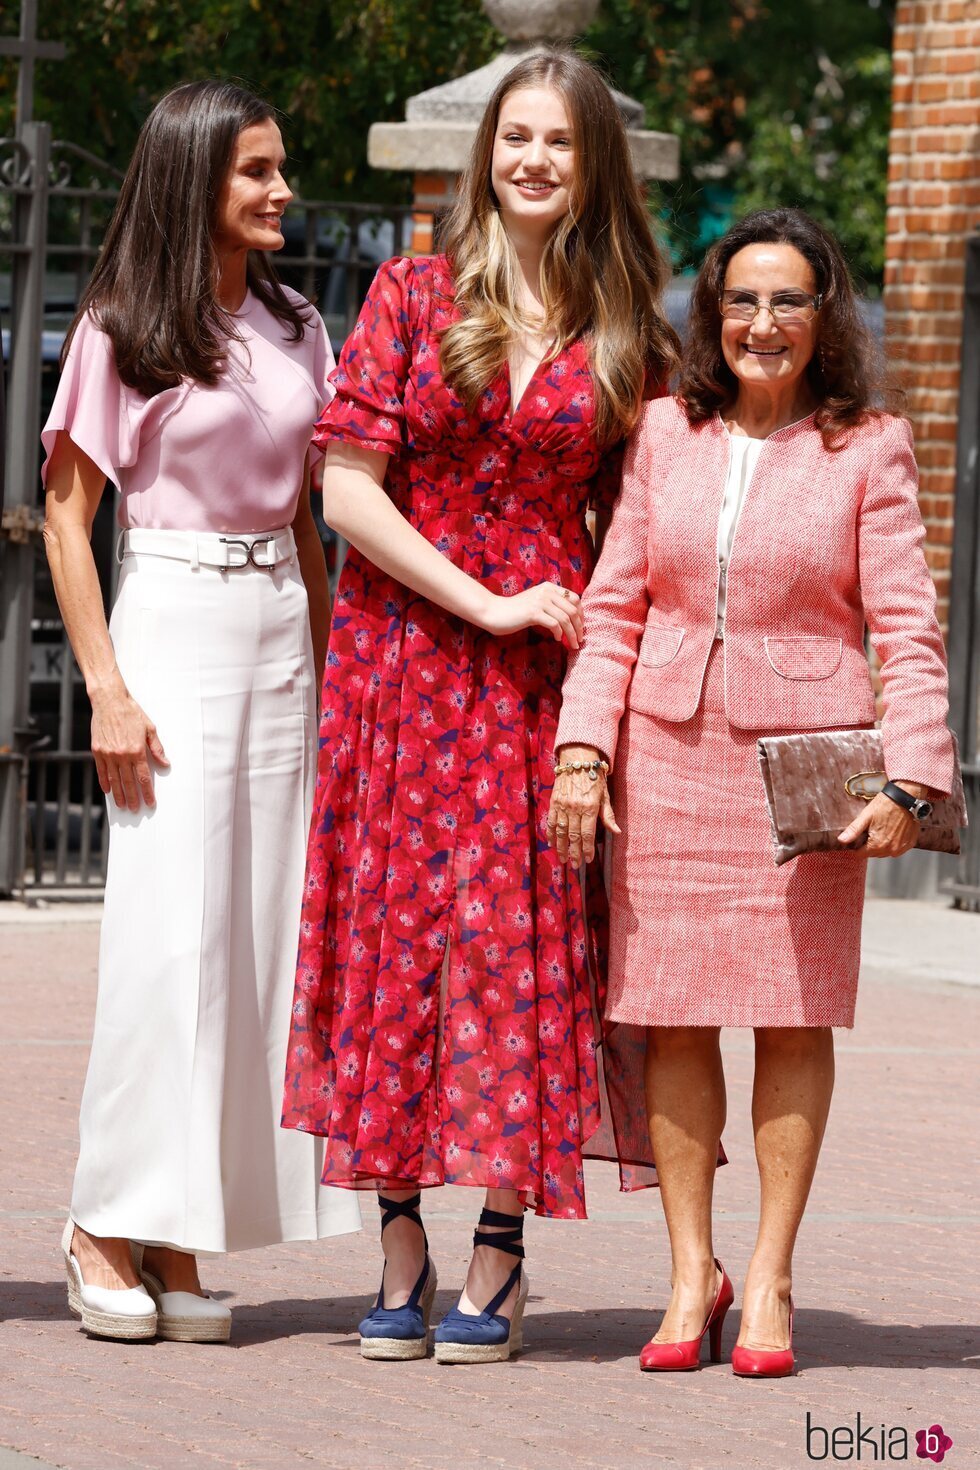 La Reina Letizia, la Princesa Leonor y Paloma Rocasolano en la Confirmación de la Infanta Sofía